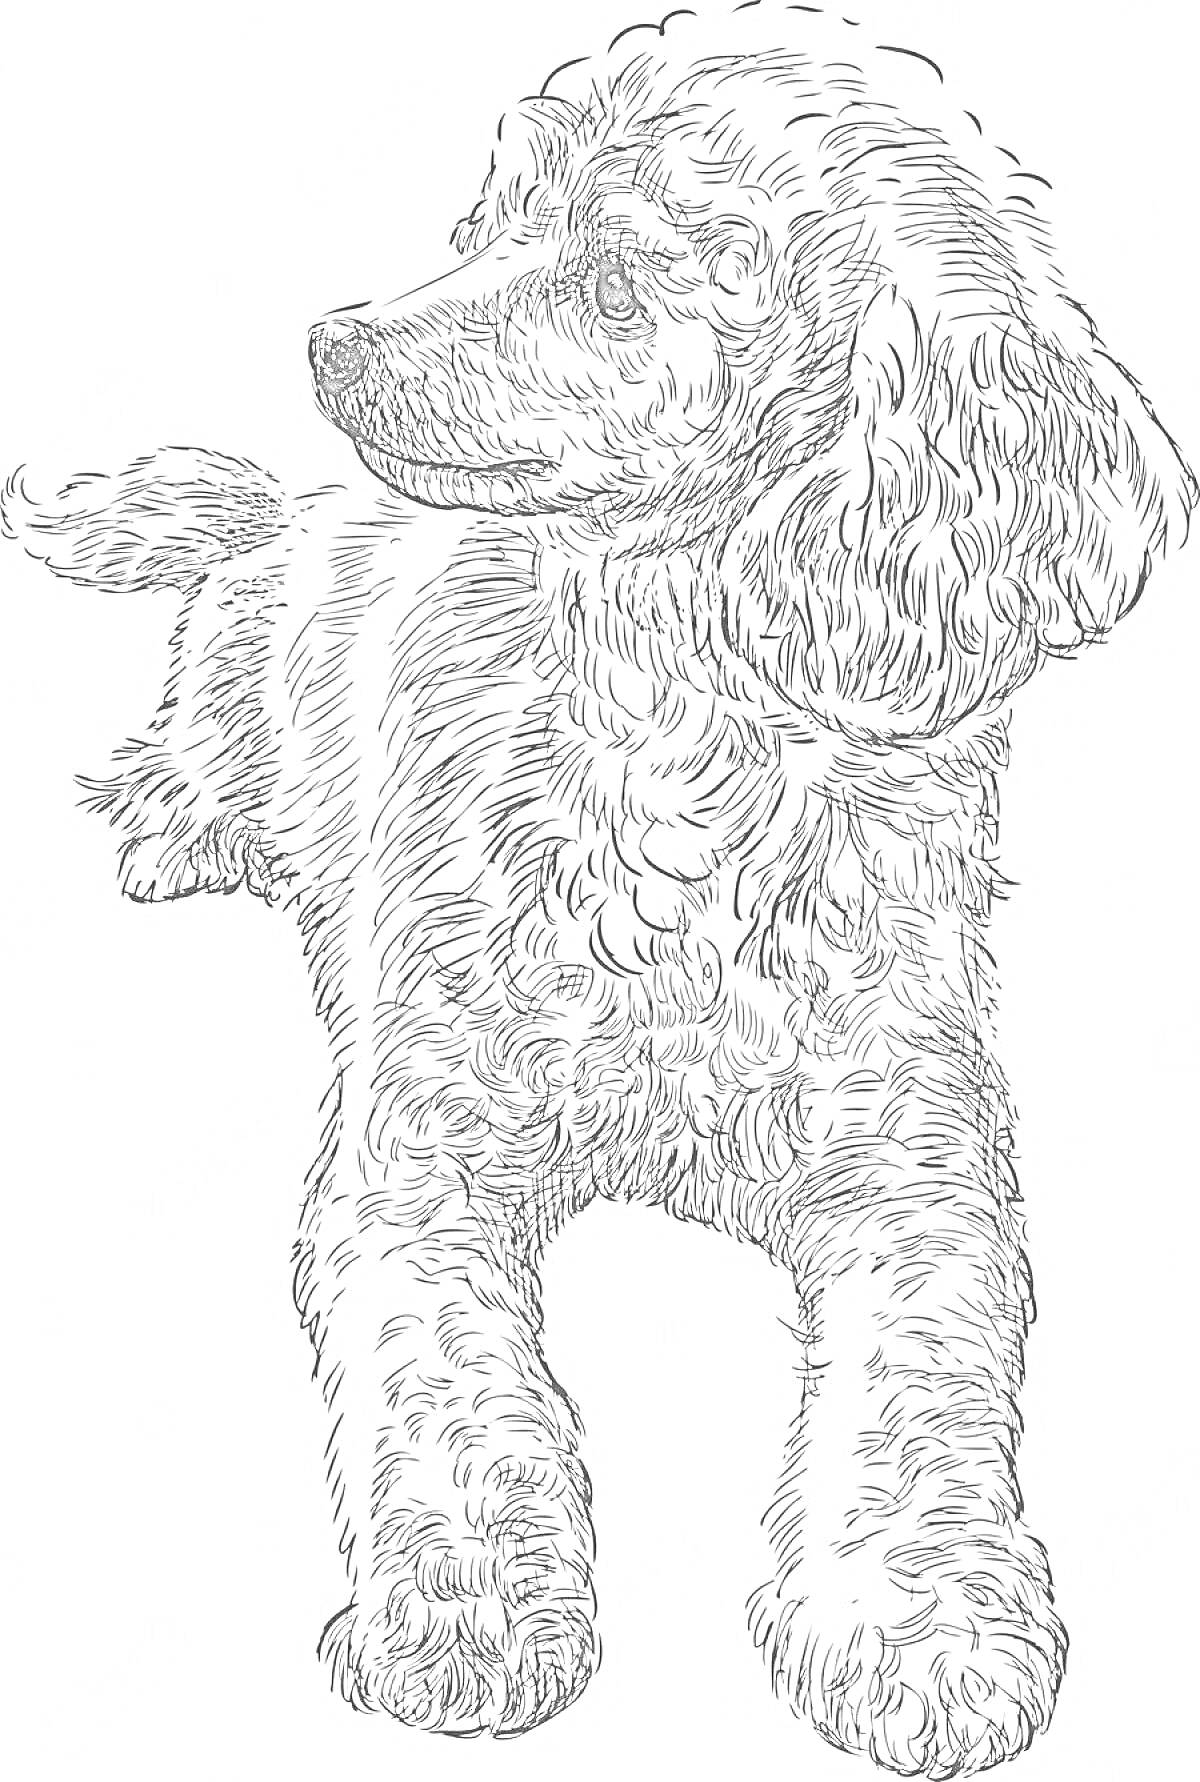 Раскраска Той пудель, линия рисунка, стоящая собака, смотрит в сторону